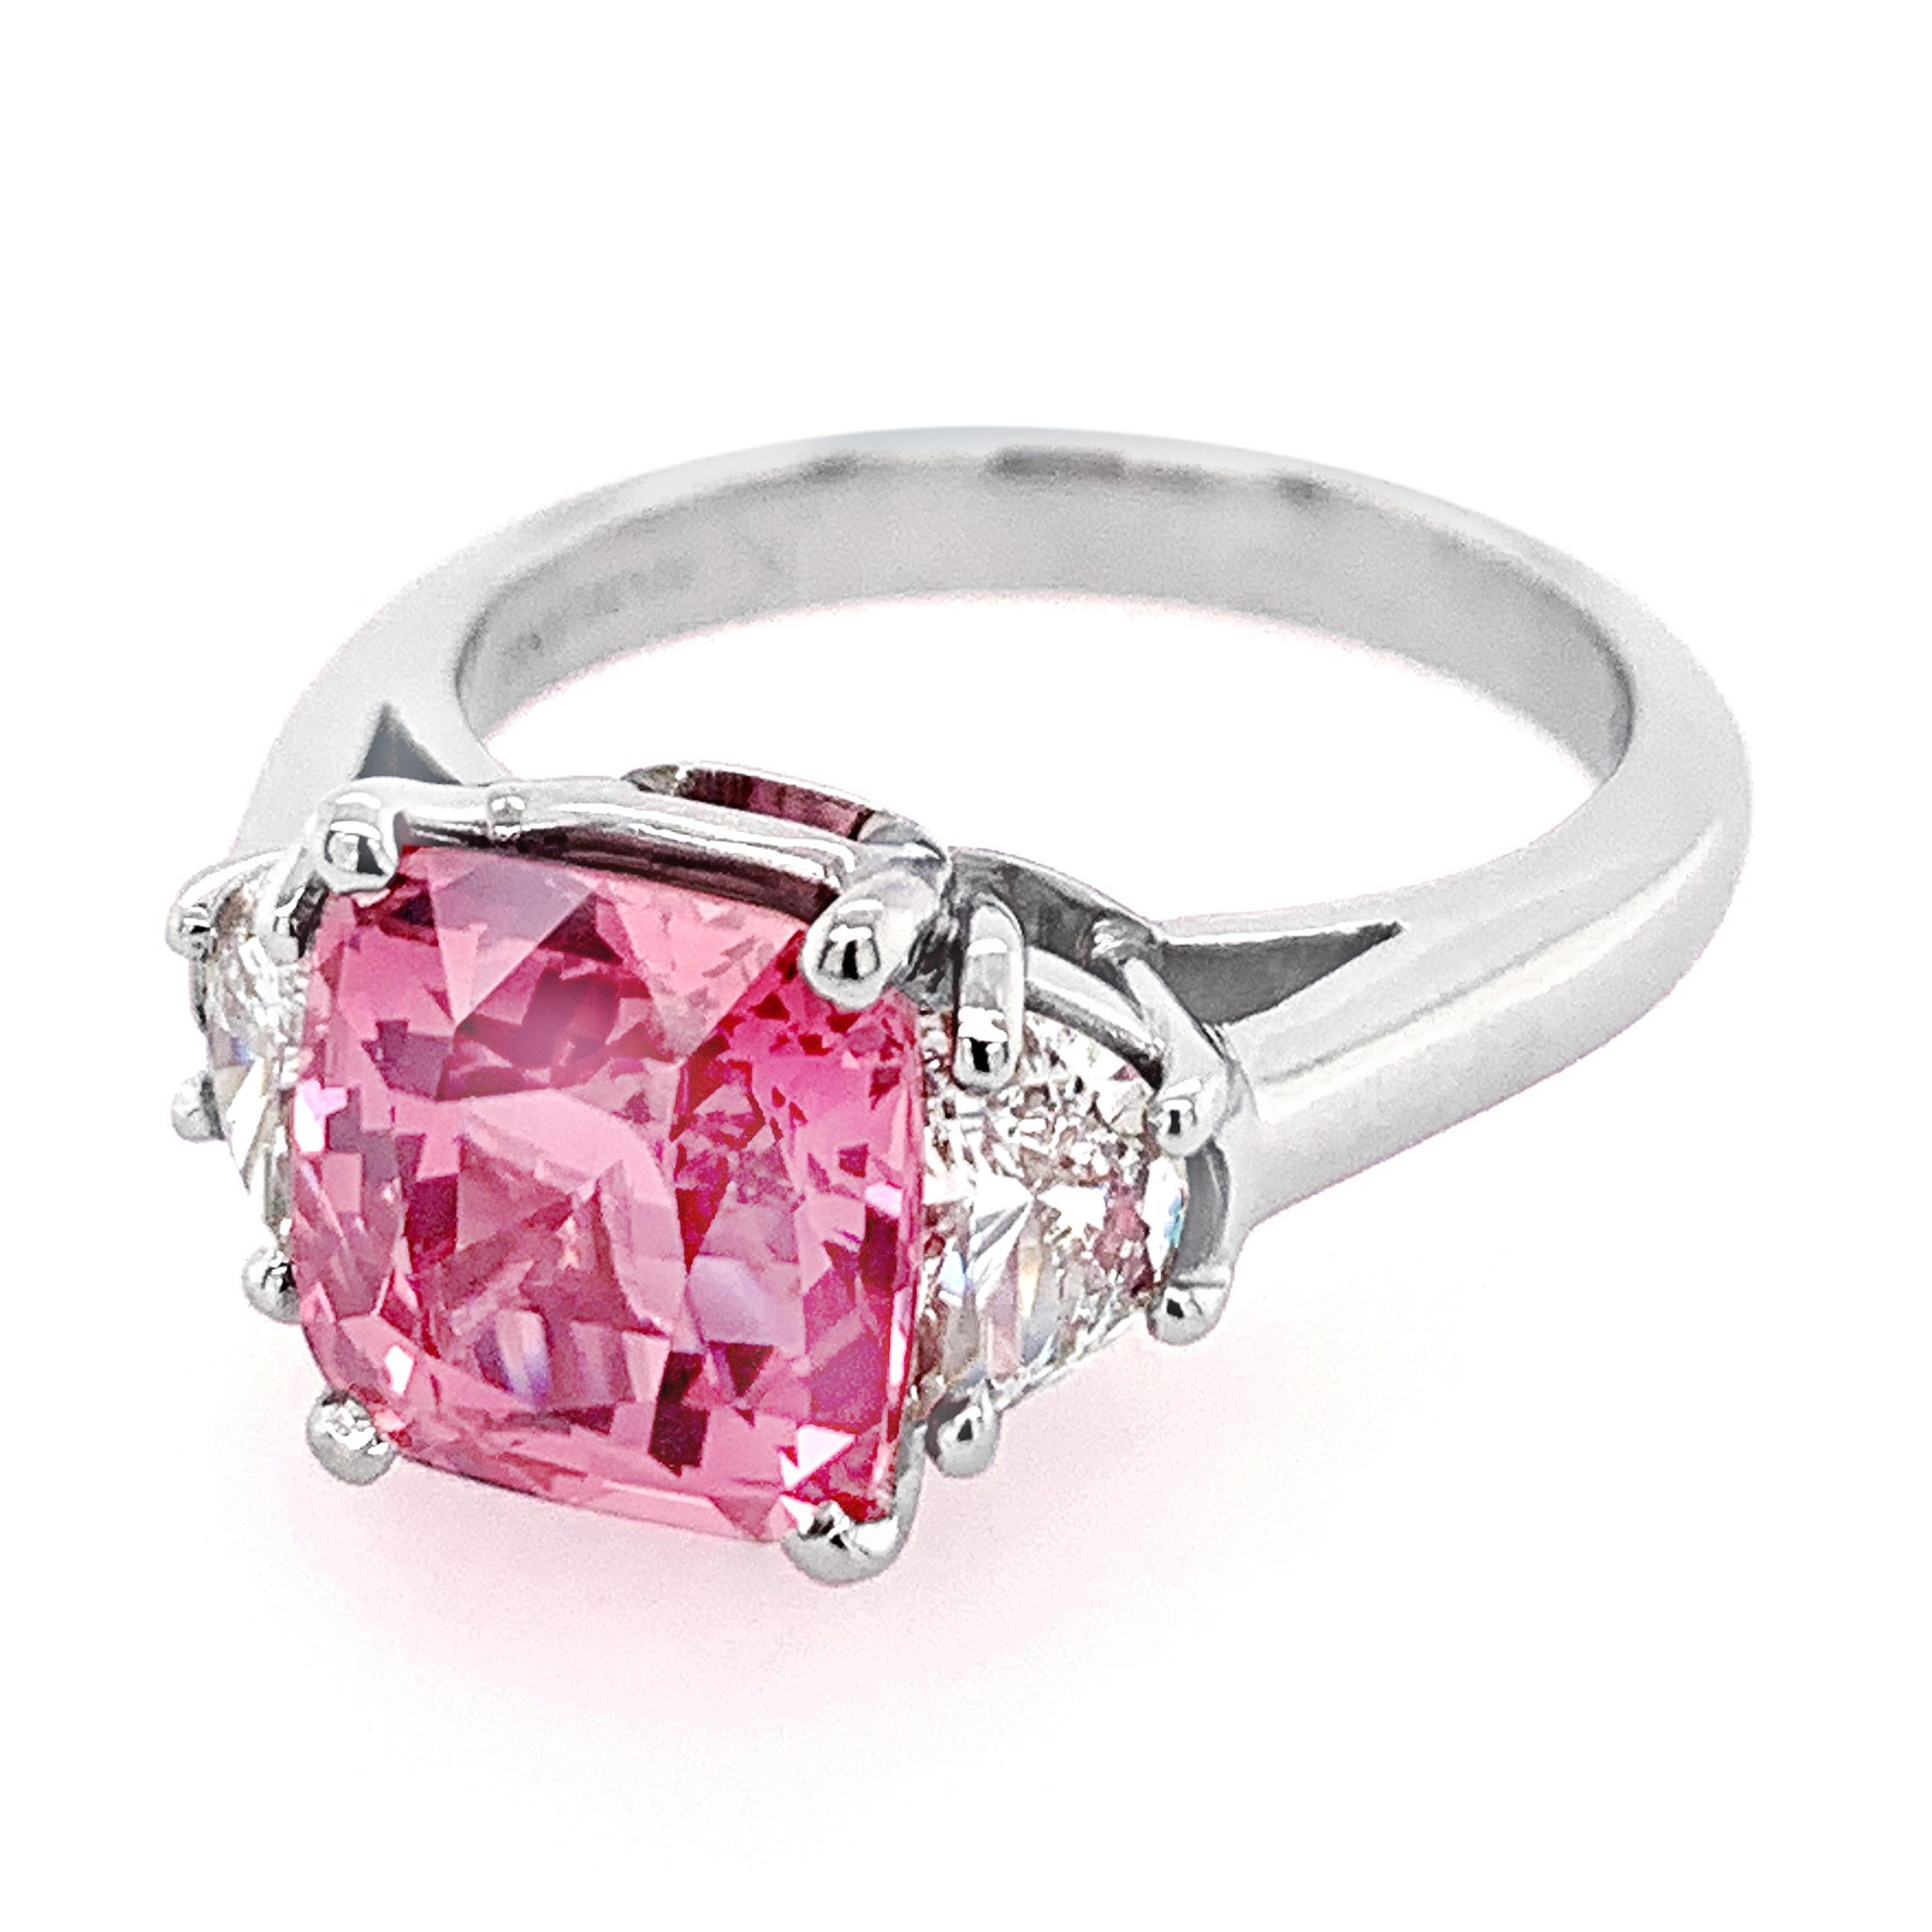 GIA zertifiziert 3,95 Karat natürlichen (keine Hitze) rosa Saphir Ring. Der mittlere Saphir ist kissenförmig geschliffen. Zwei seitliche halbmondförmige Diamanten von insgesamt 0,64 Karat; Reinheit VVS2-VS1, Farbe H-I. Ring und Fassung aus Platin.

